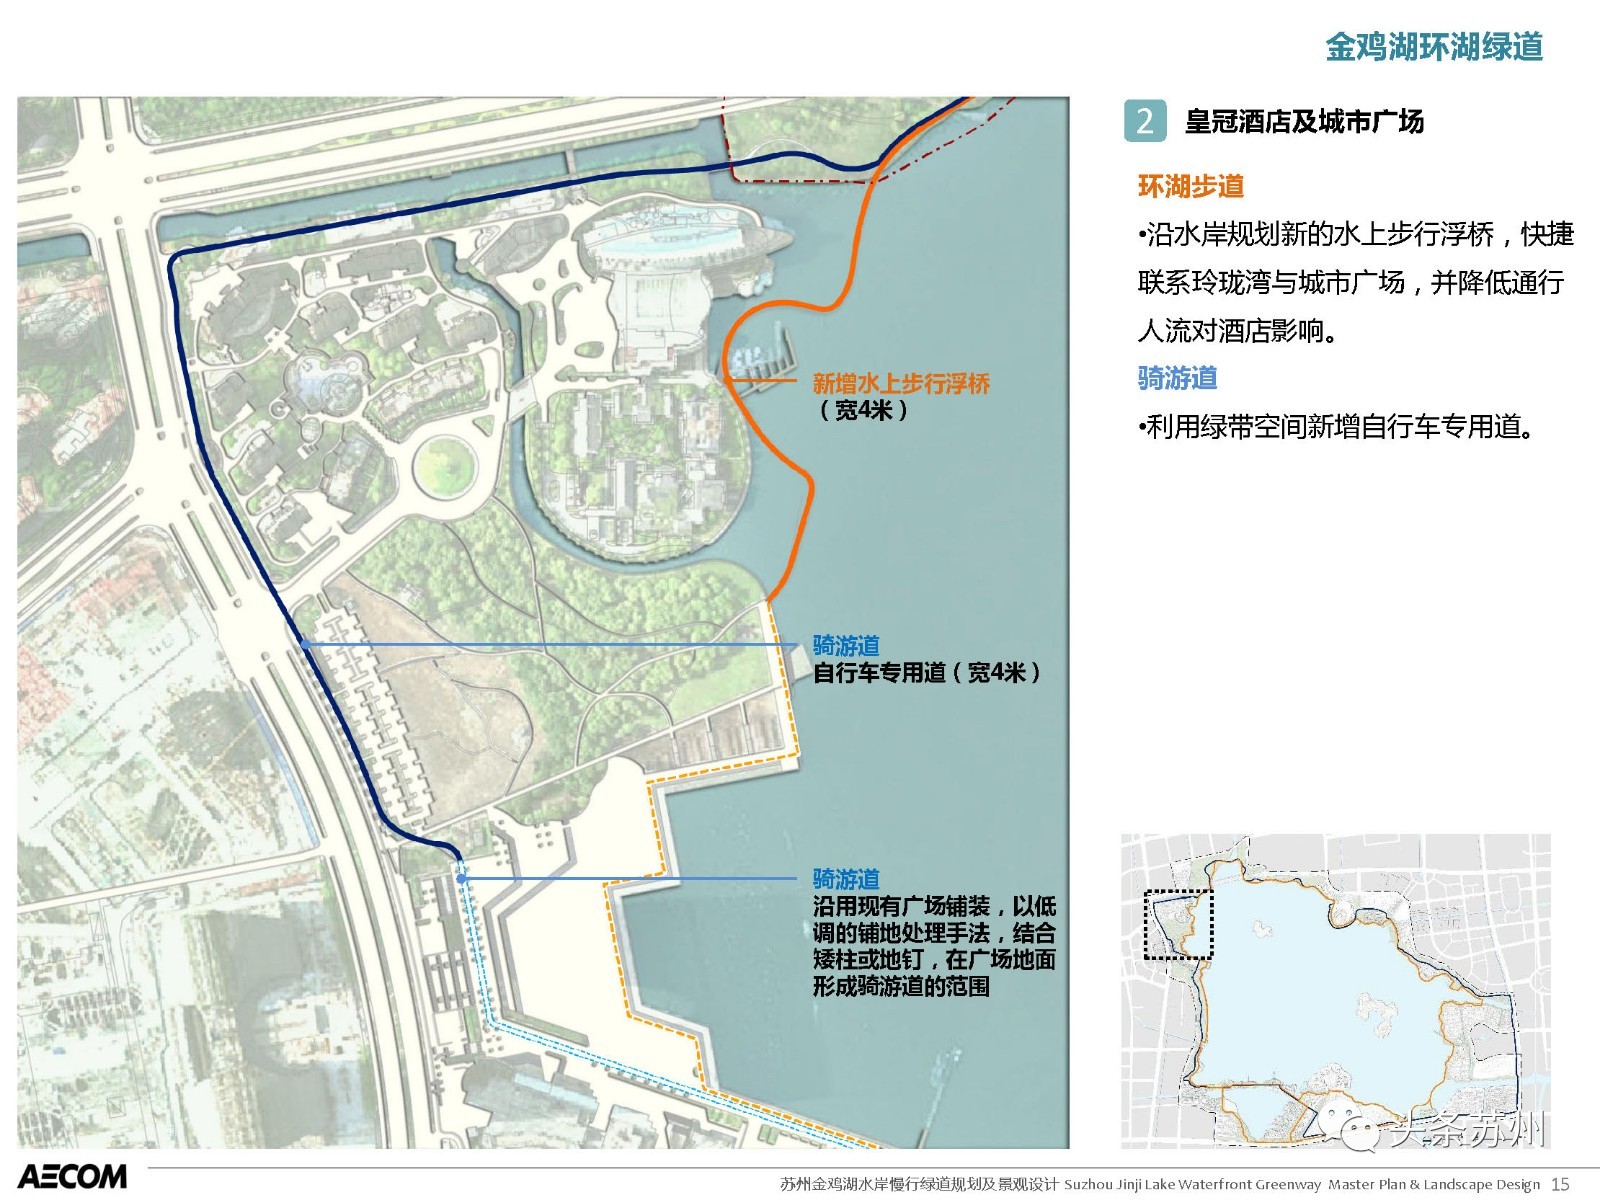 环金鸡湖将有大变化!玲珑湾,李公堤,摩天轮……16大景观再升级!